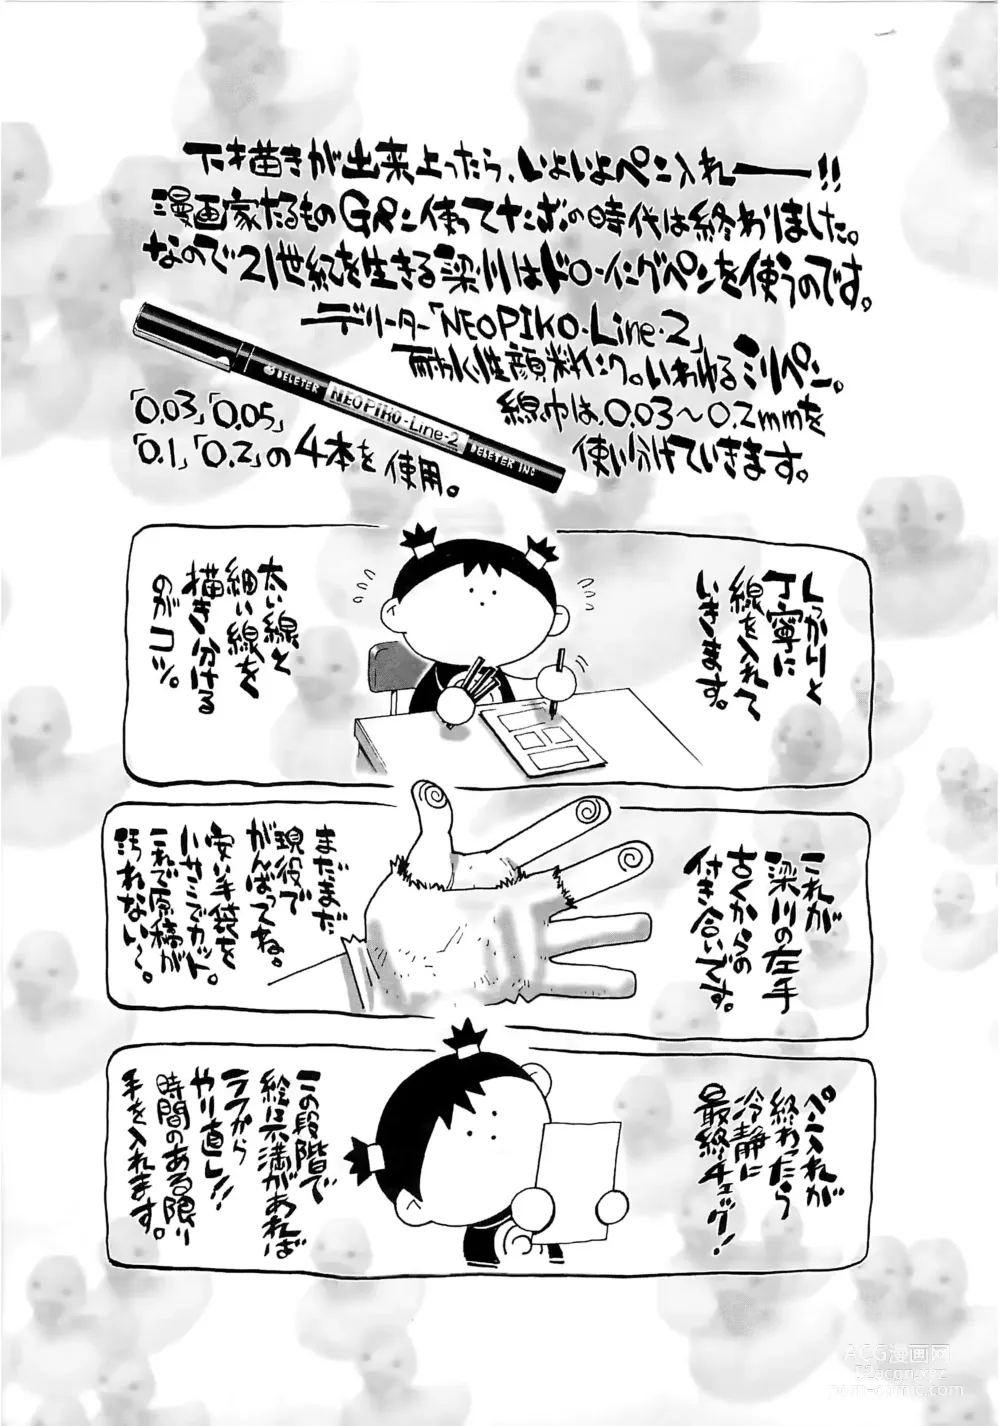 Page 190 of manga Bokutachi Otokonoko